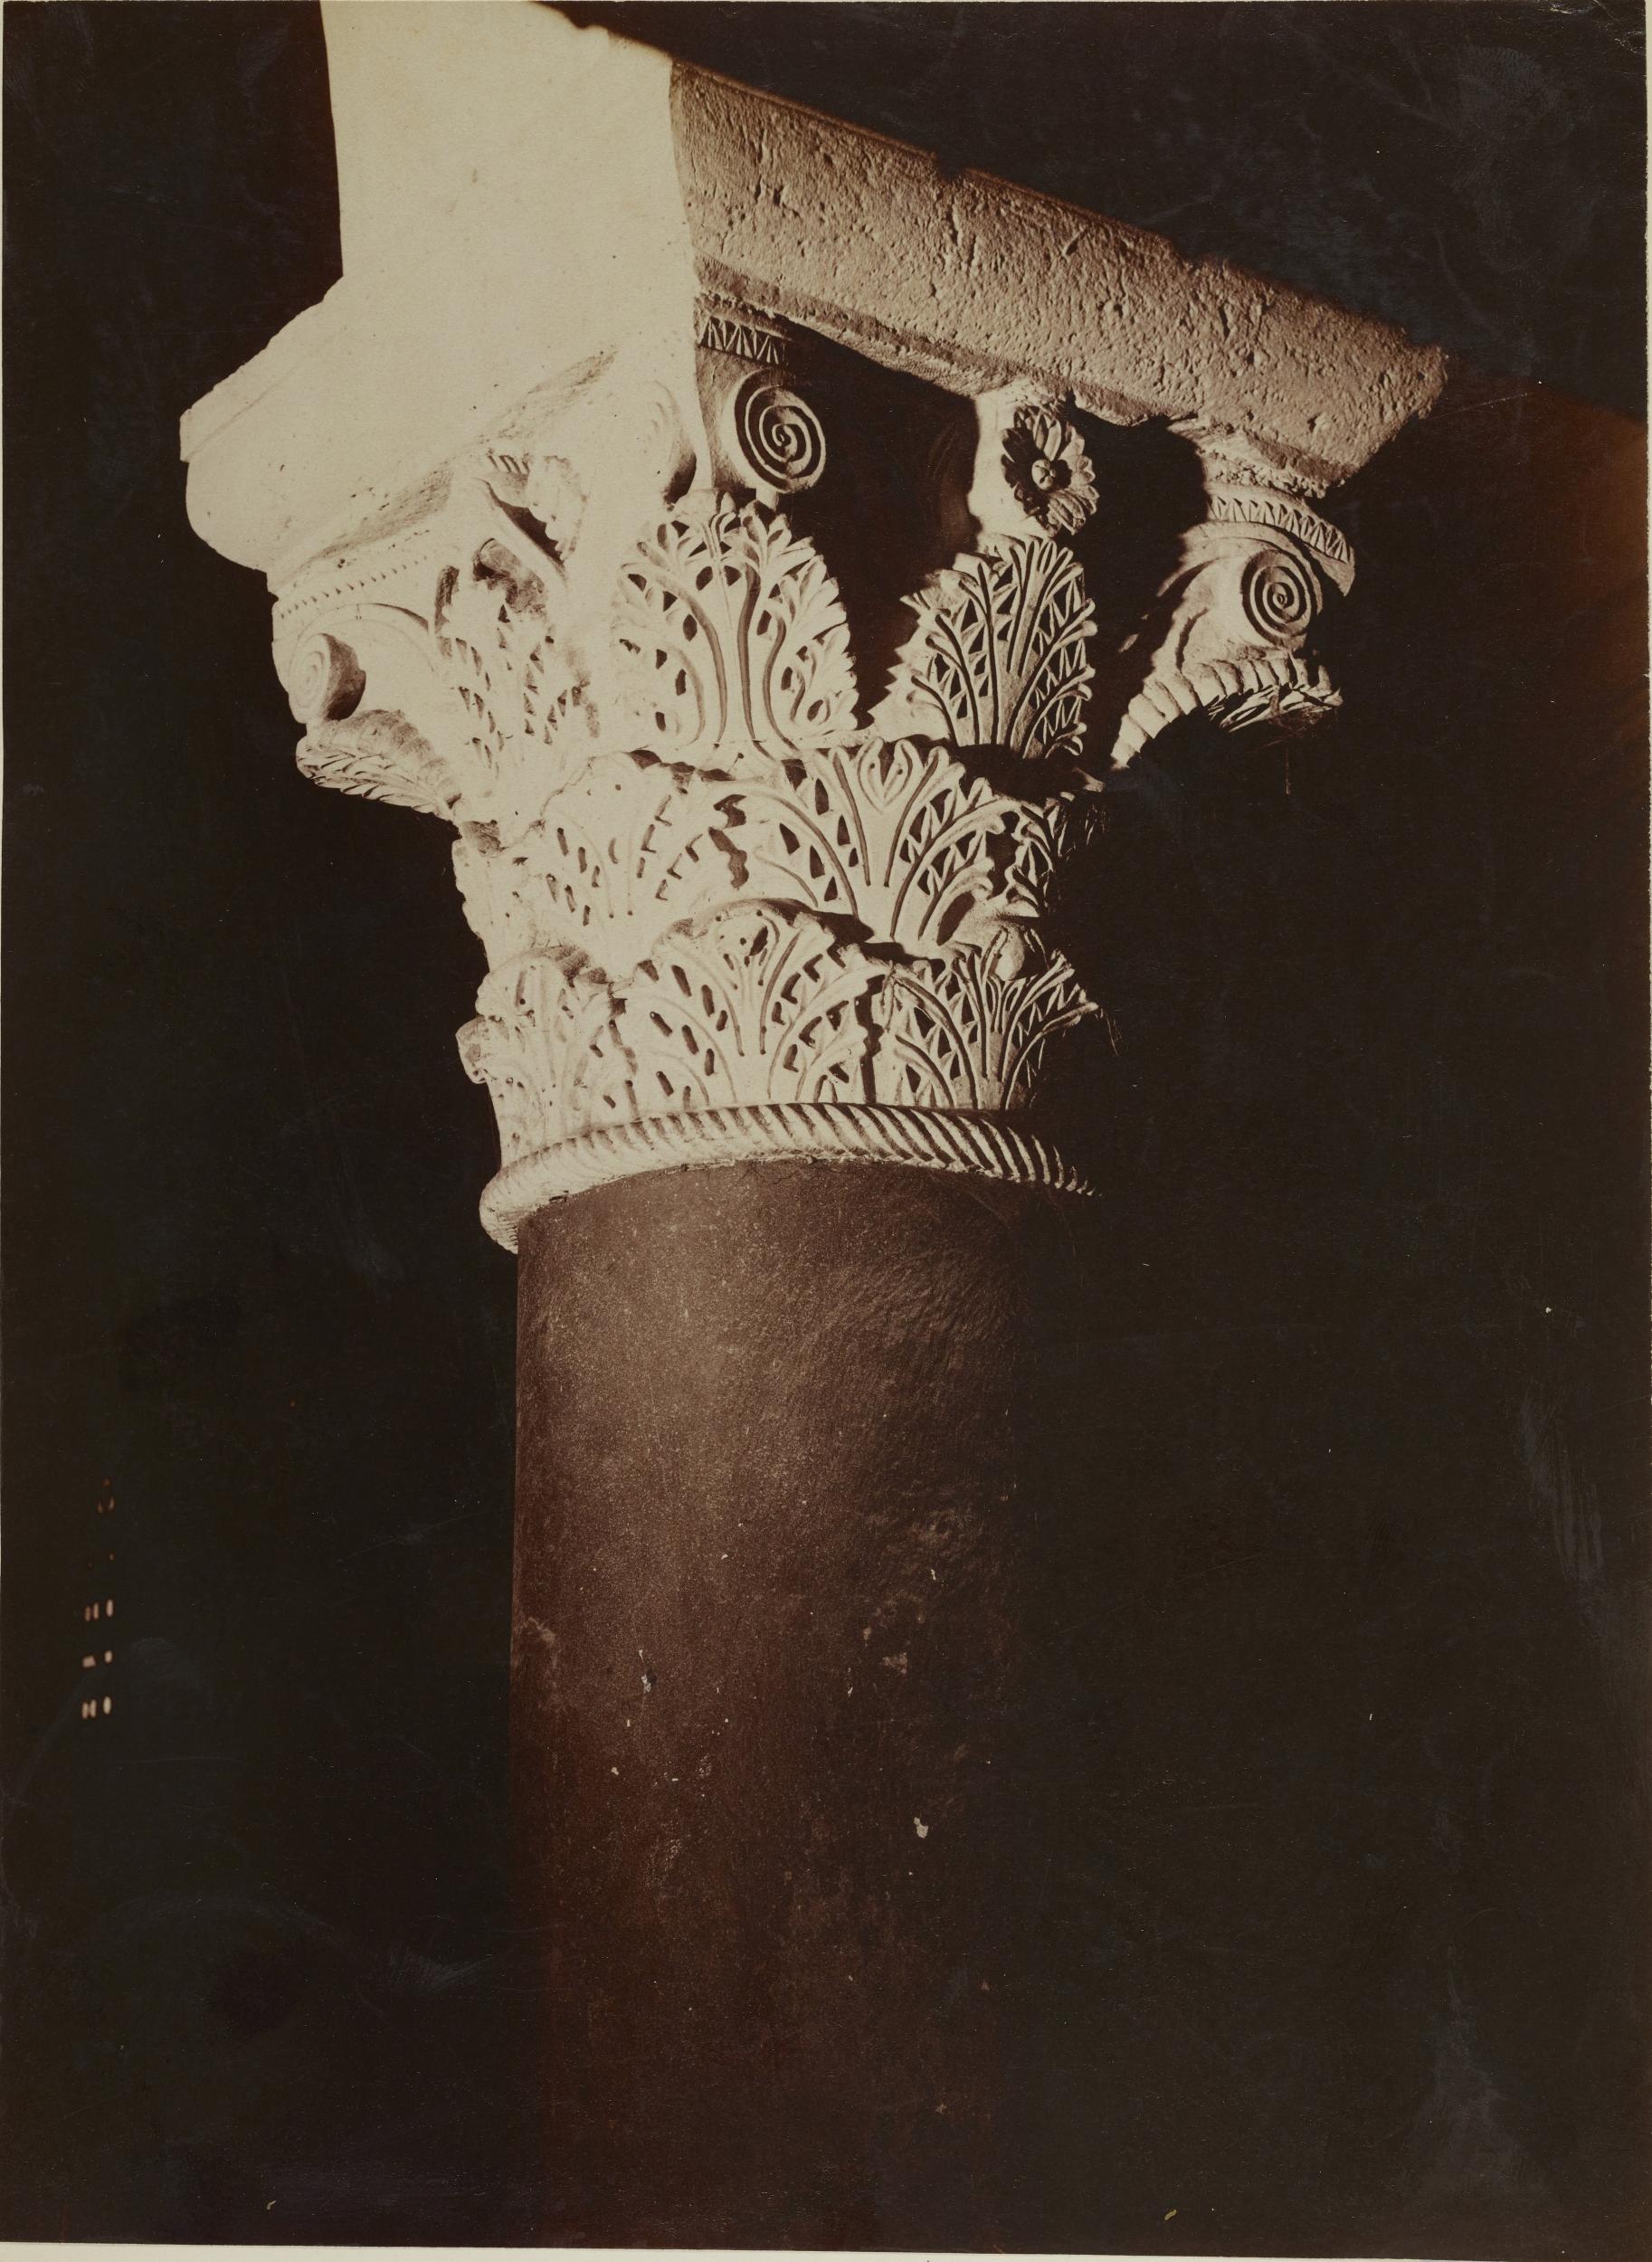 Fotografo non identificato, Bari - Basilica di S. Nicola, navata centrale, capitello a foglia di acanto spinoso, 1876-1900, carbone, MPI136808